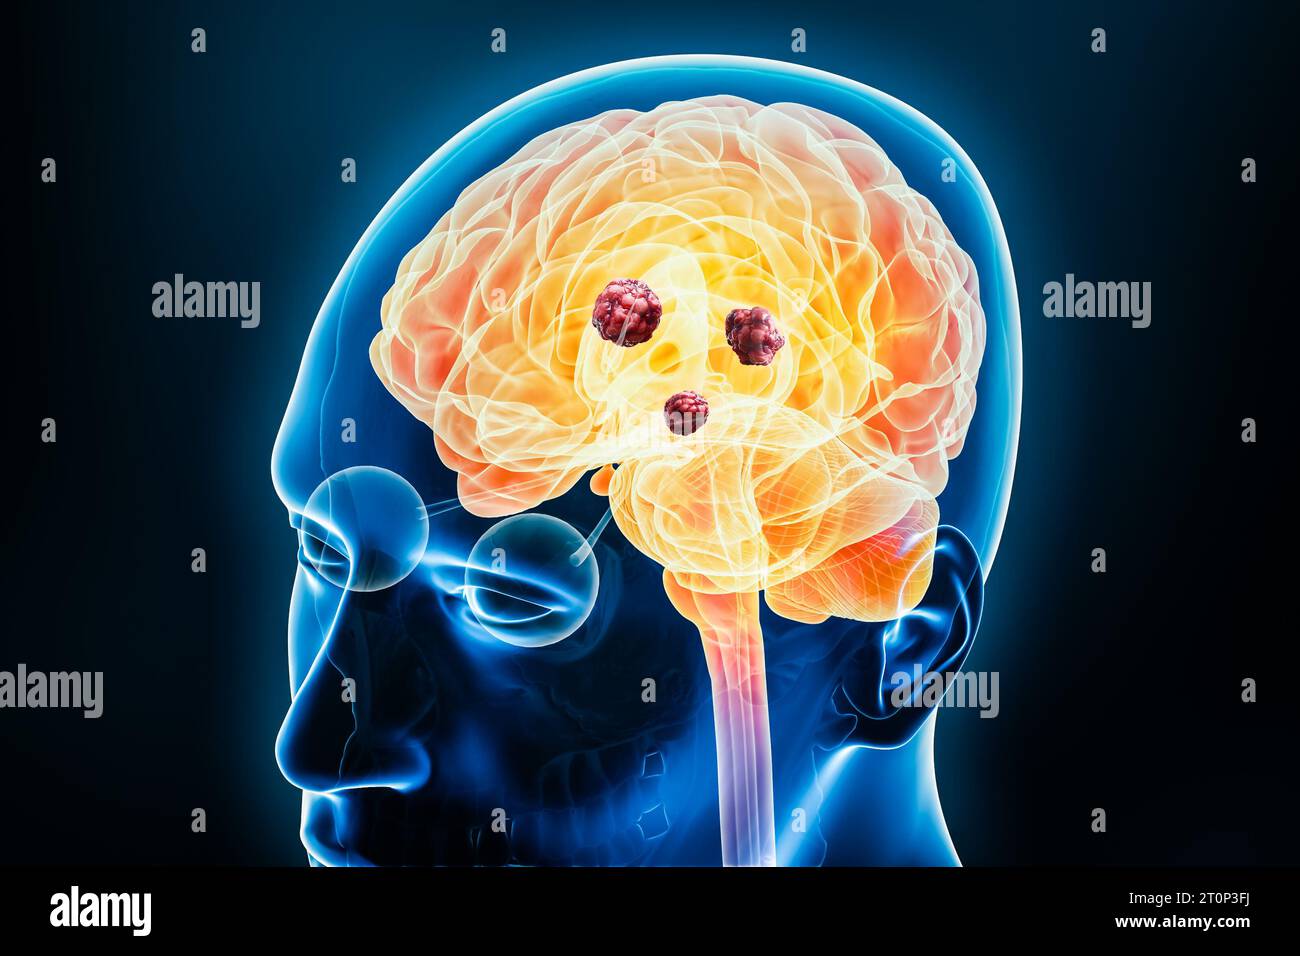 Cancer cerveau avec des cellules cancéreuses ou des tumeurs X-ray 3D rendu illustration avec le corps. Anatomie, maladies neurologiques, oncologie, médecine, psychologie, s Banque D'Images